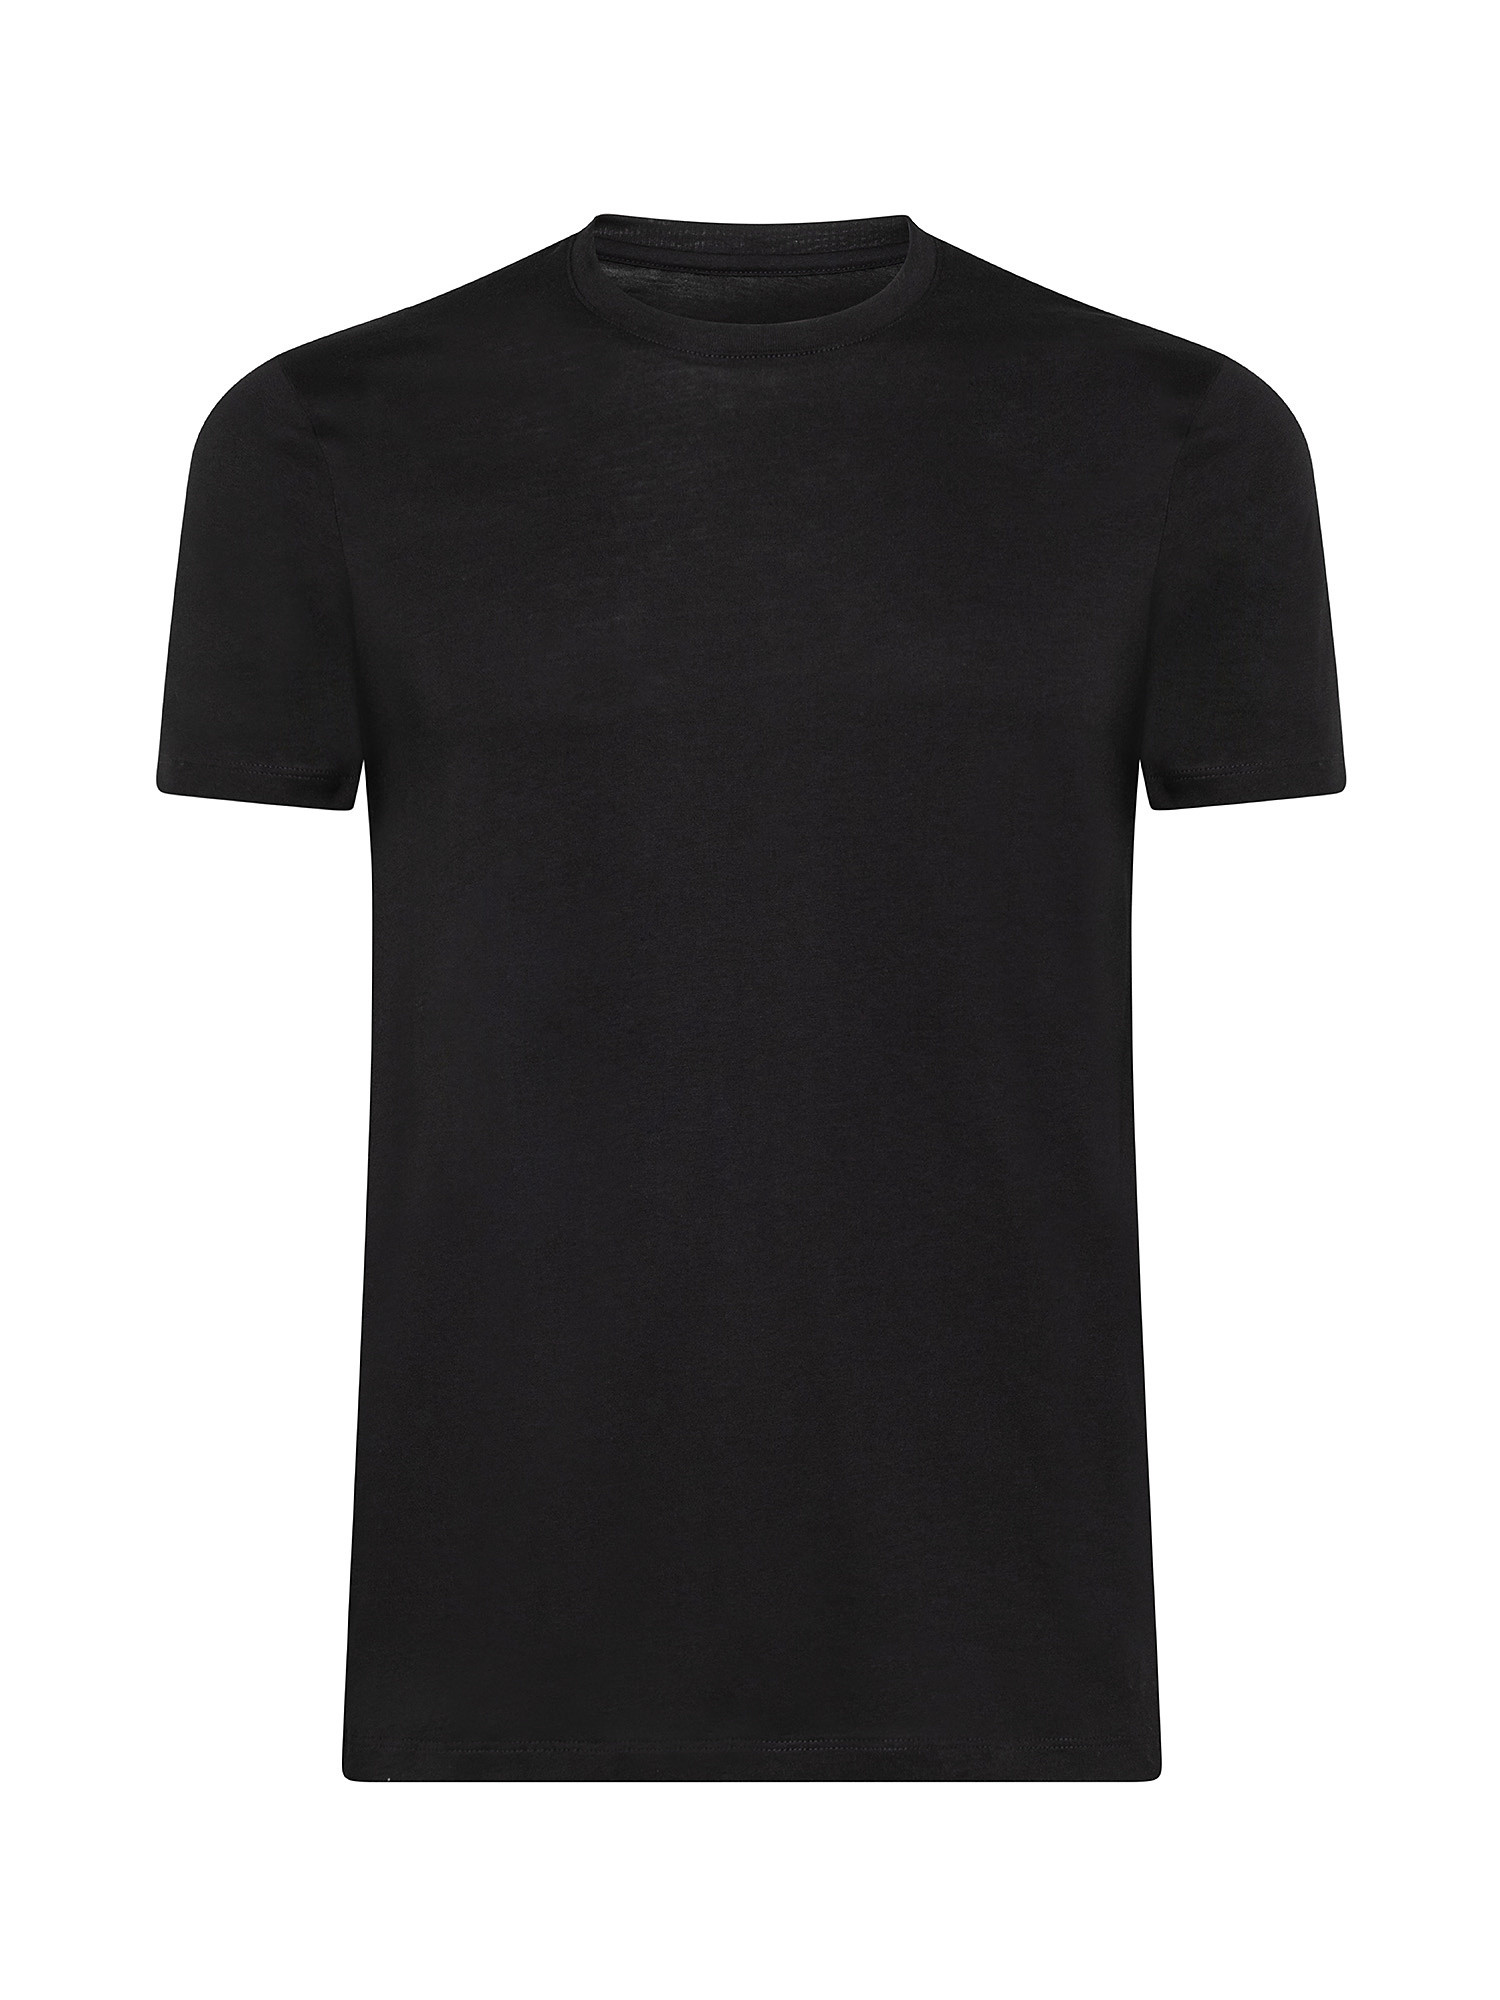 T-shirt, Black, large image number 0